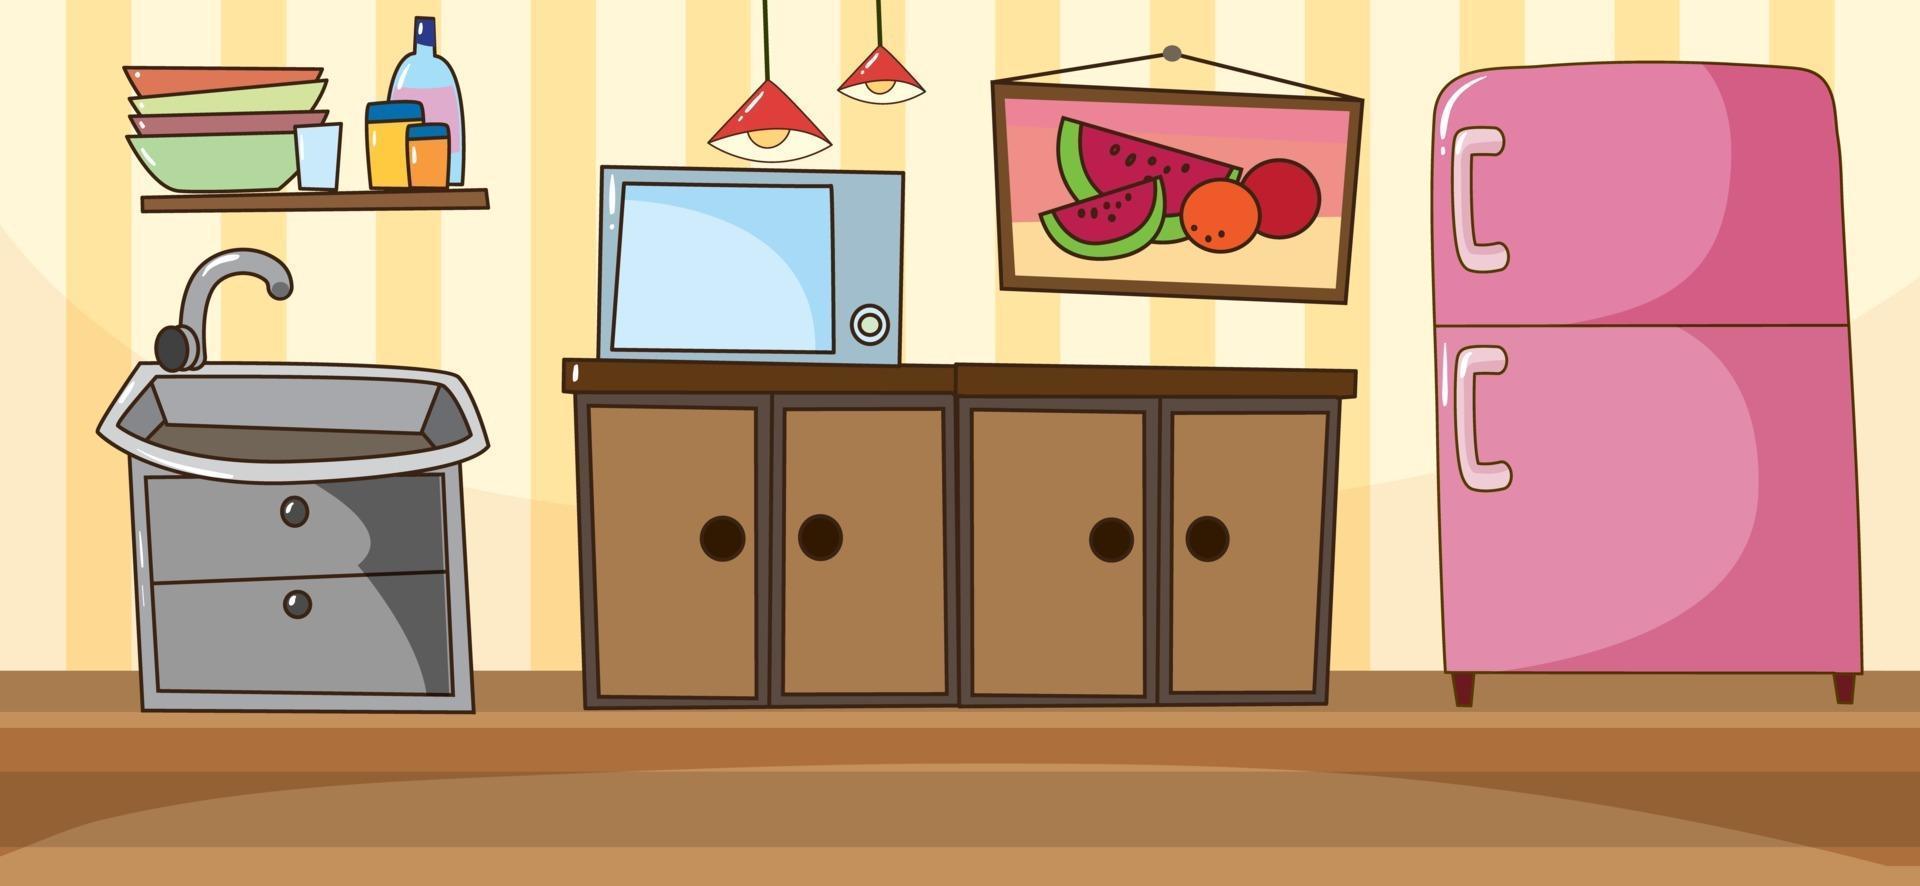 escena de la sala de cocina vacía con elementos de cocina vector